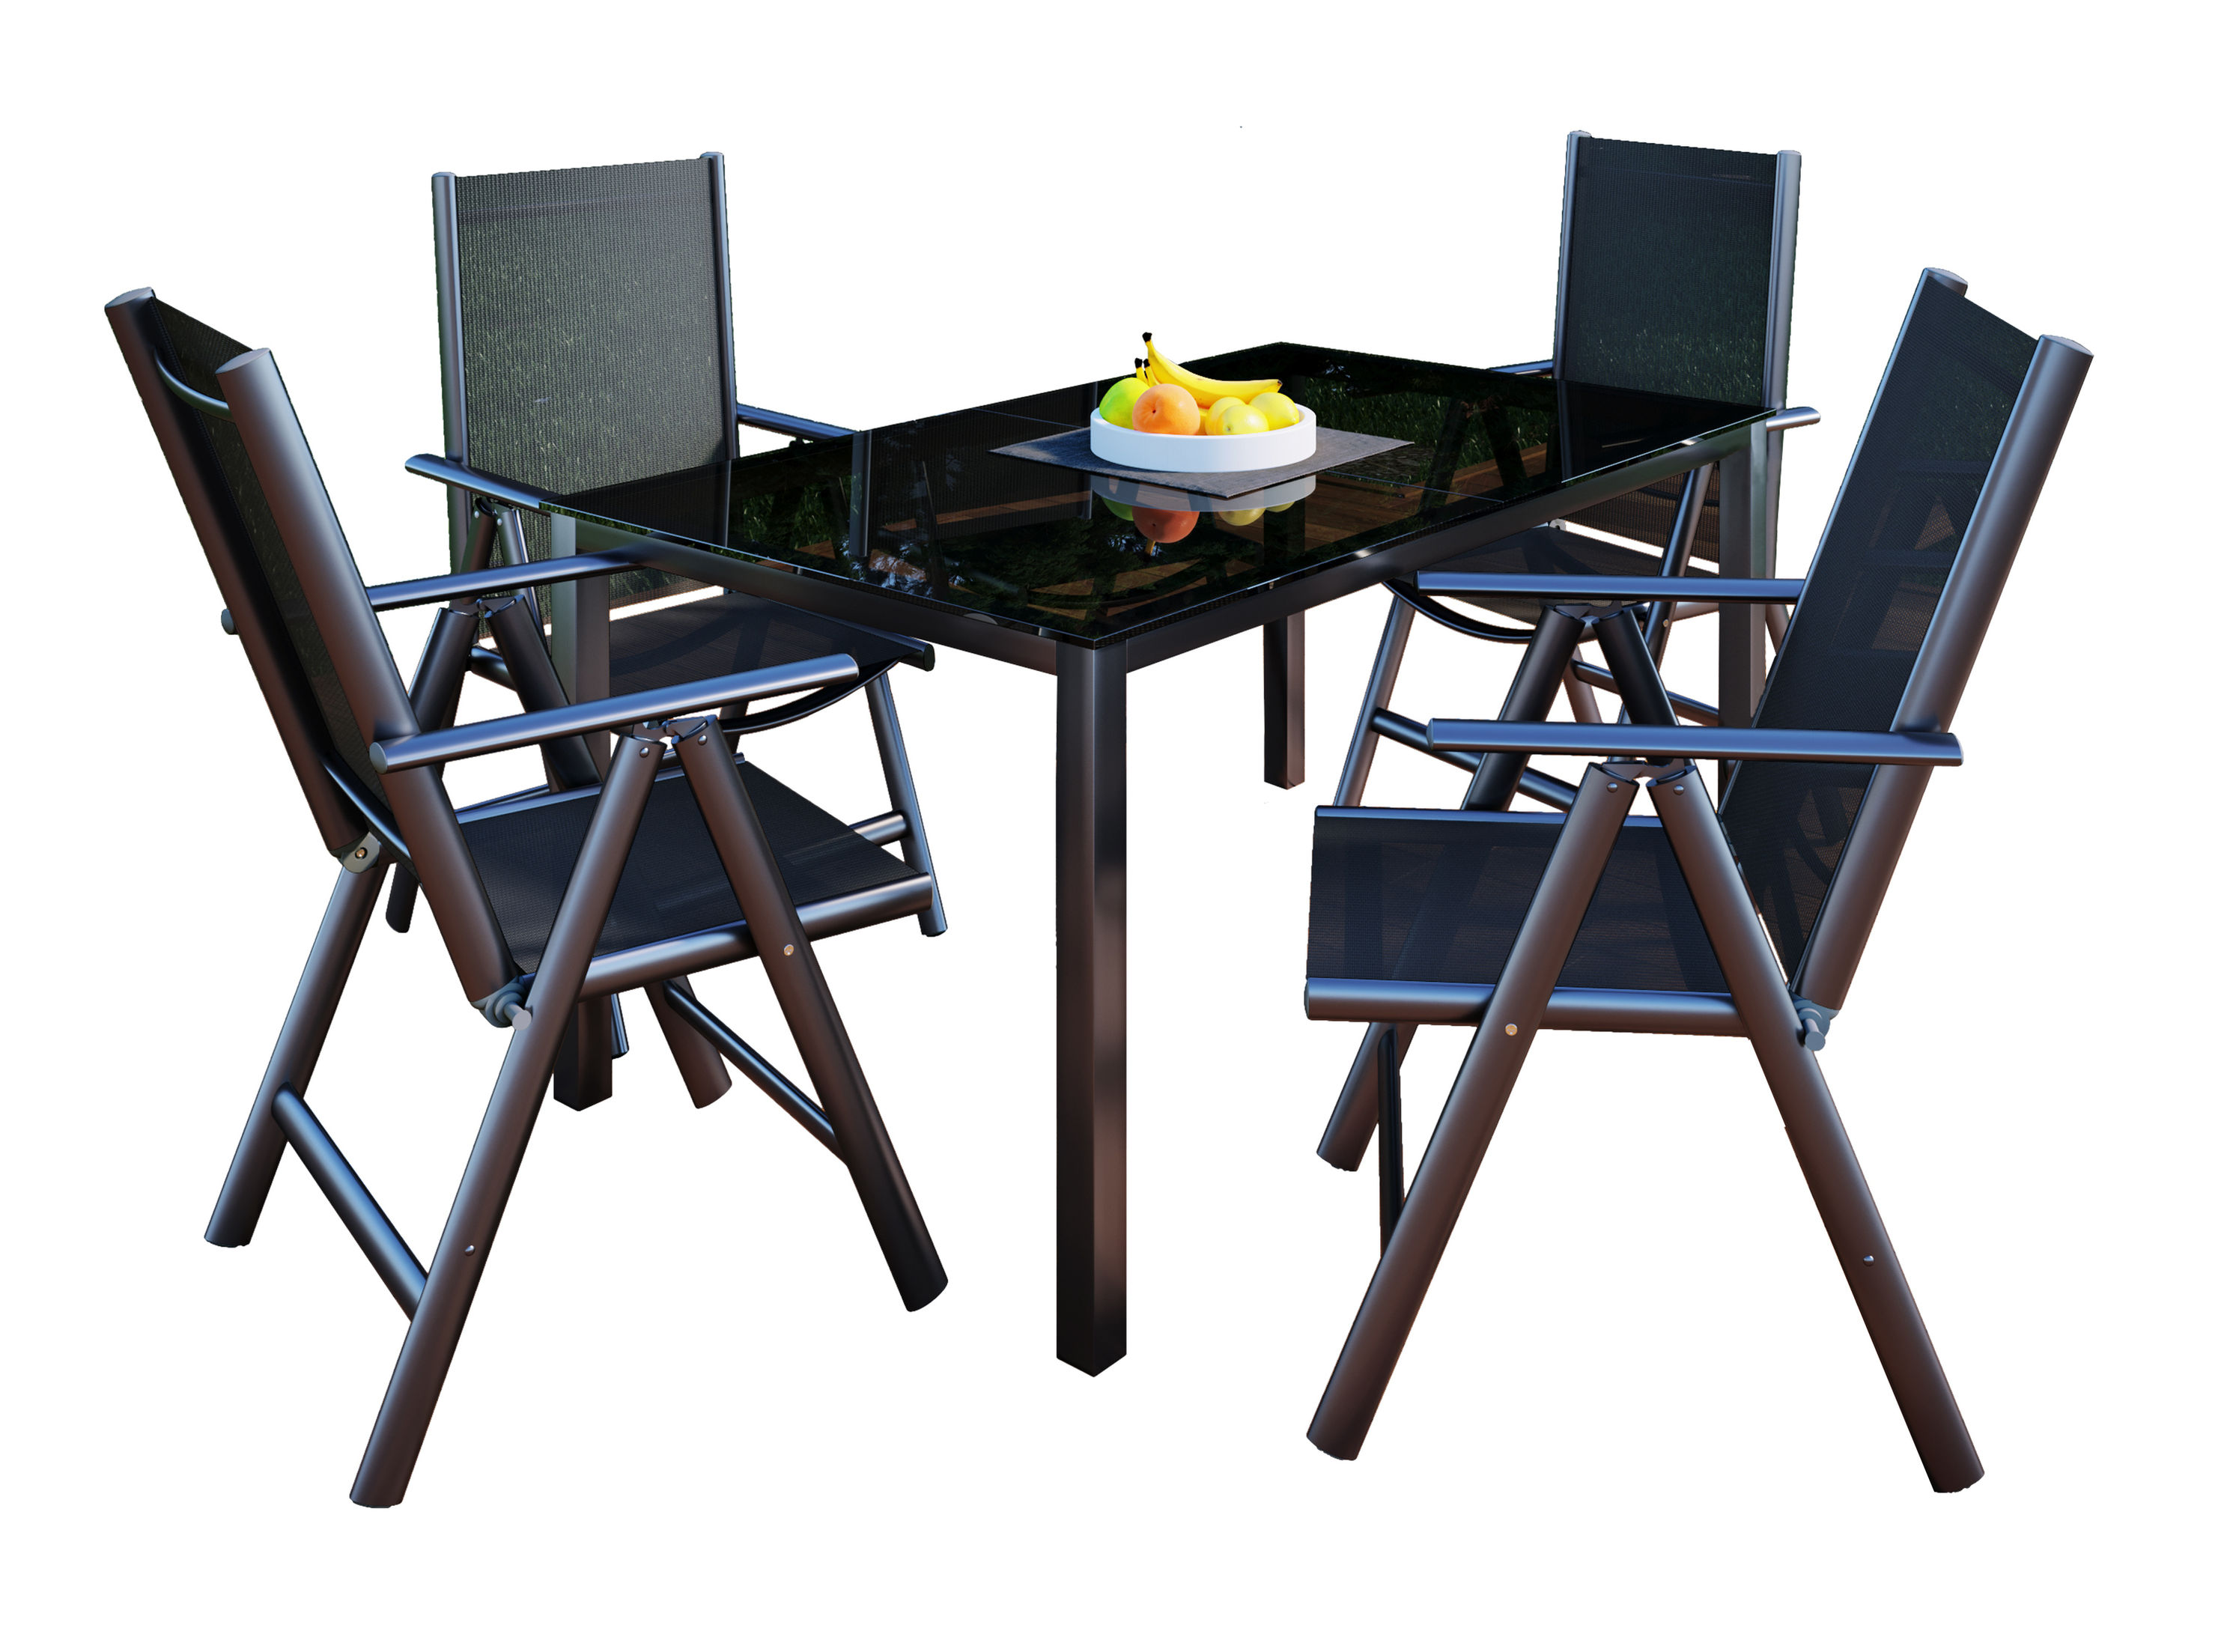 VCM Alu-Gartenmöbel 140x80 Farbe: 4 Stühle + 1 Tisch | Weltbild.de